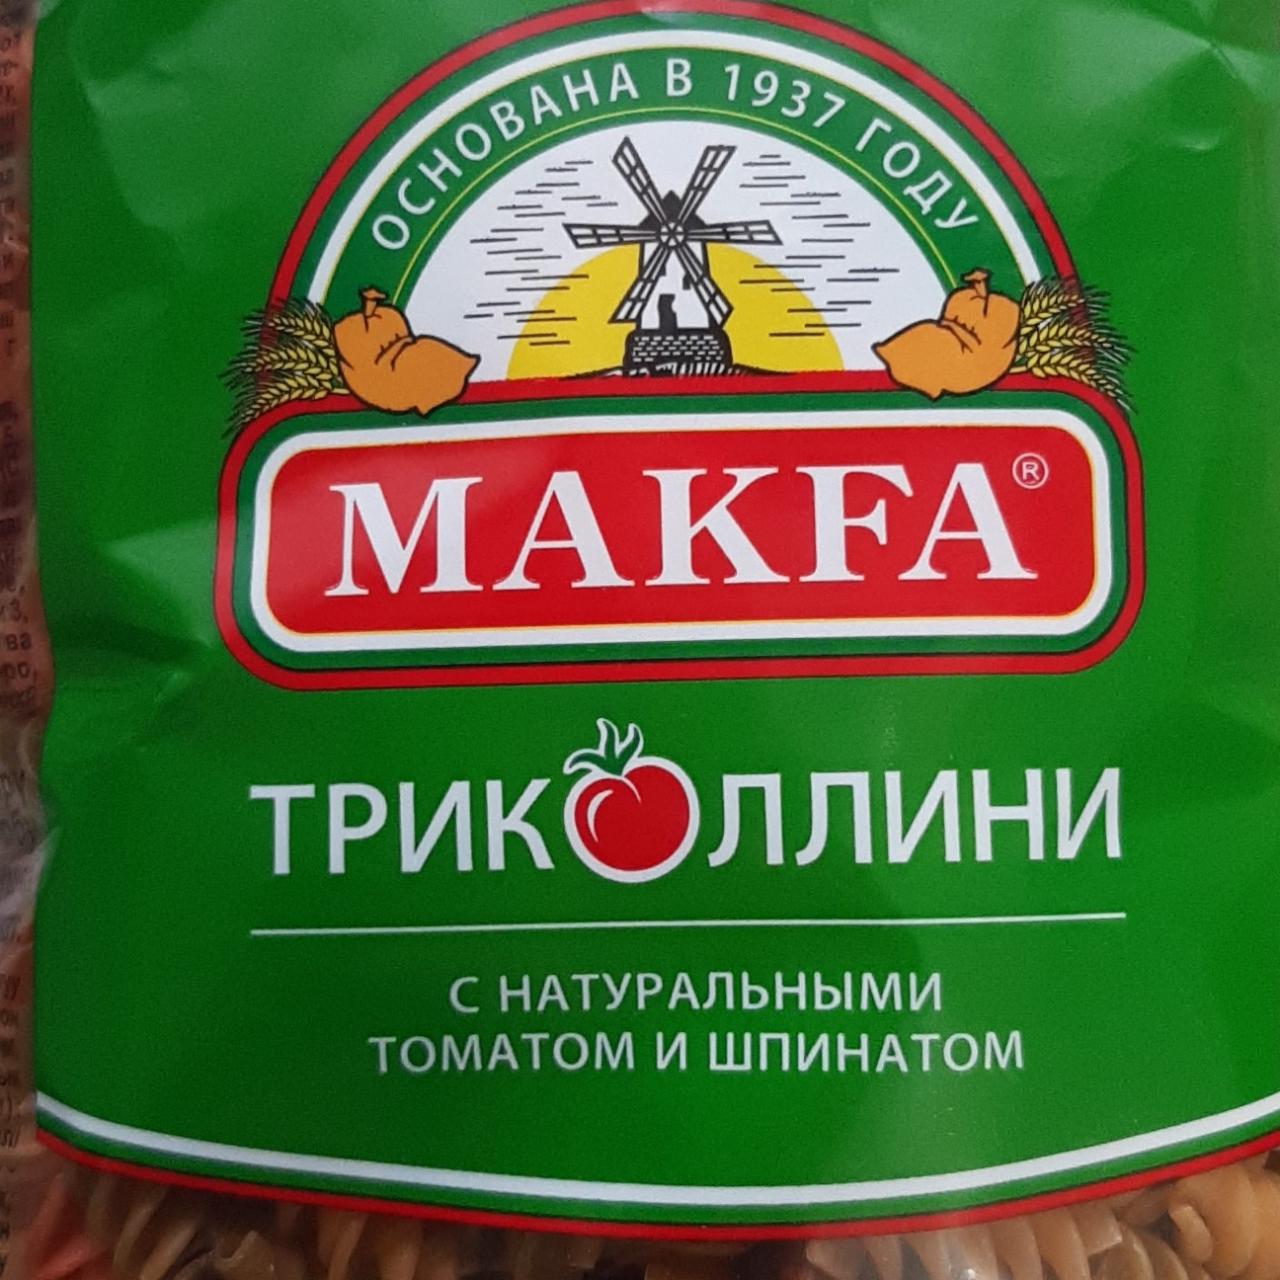 Фото - Макароны триколлини с натуральным томатом и шпинатом Makfa